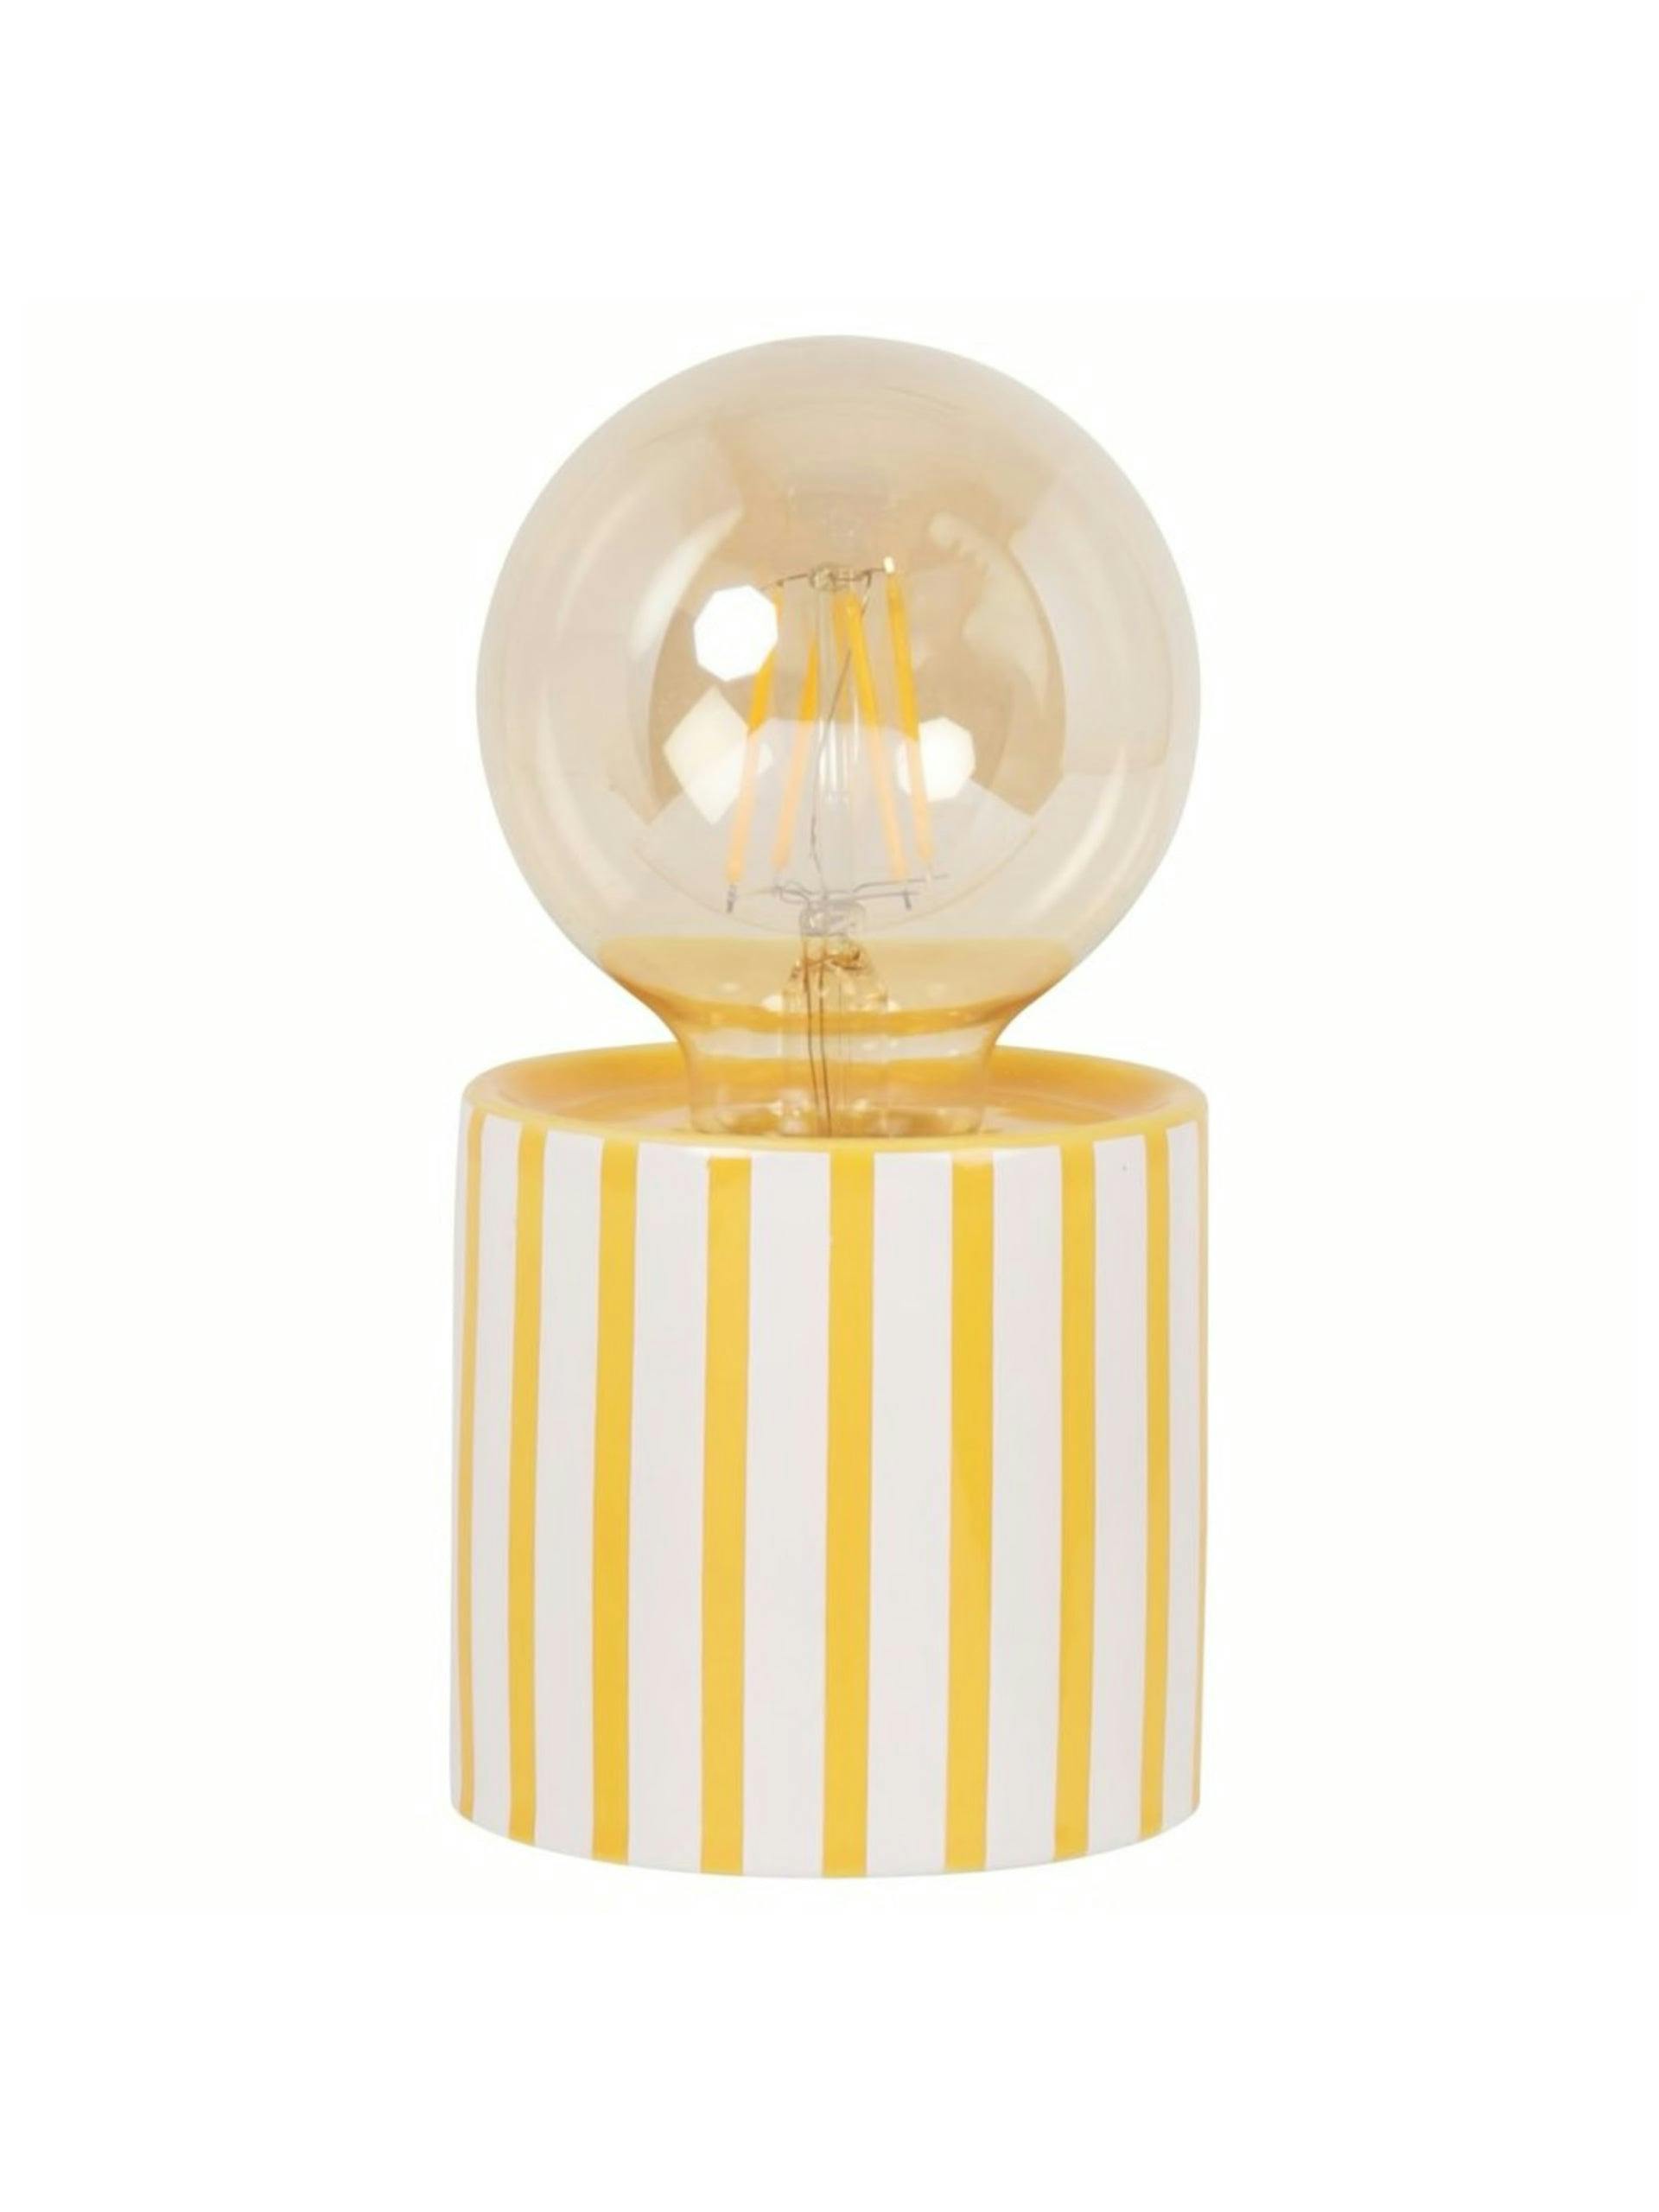 Yellow and white ceramic lamp